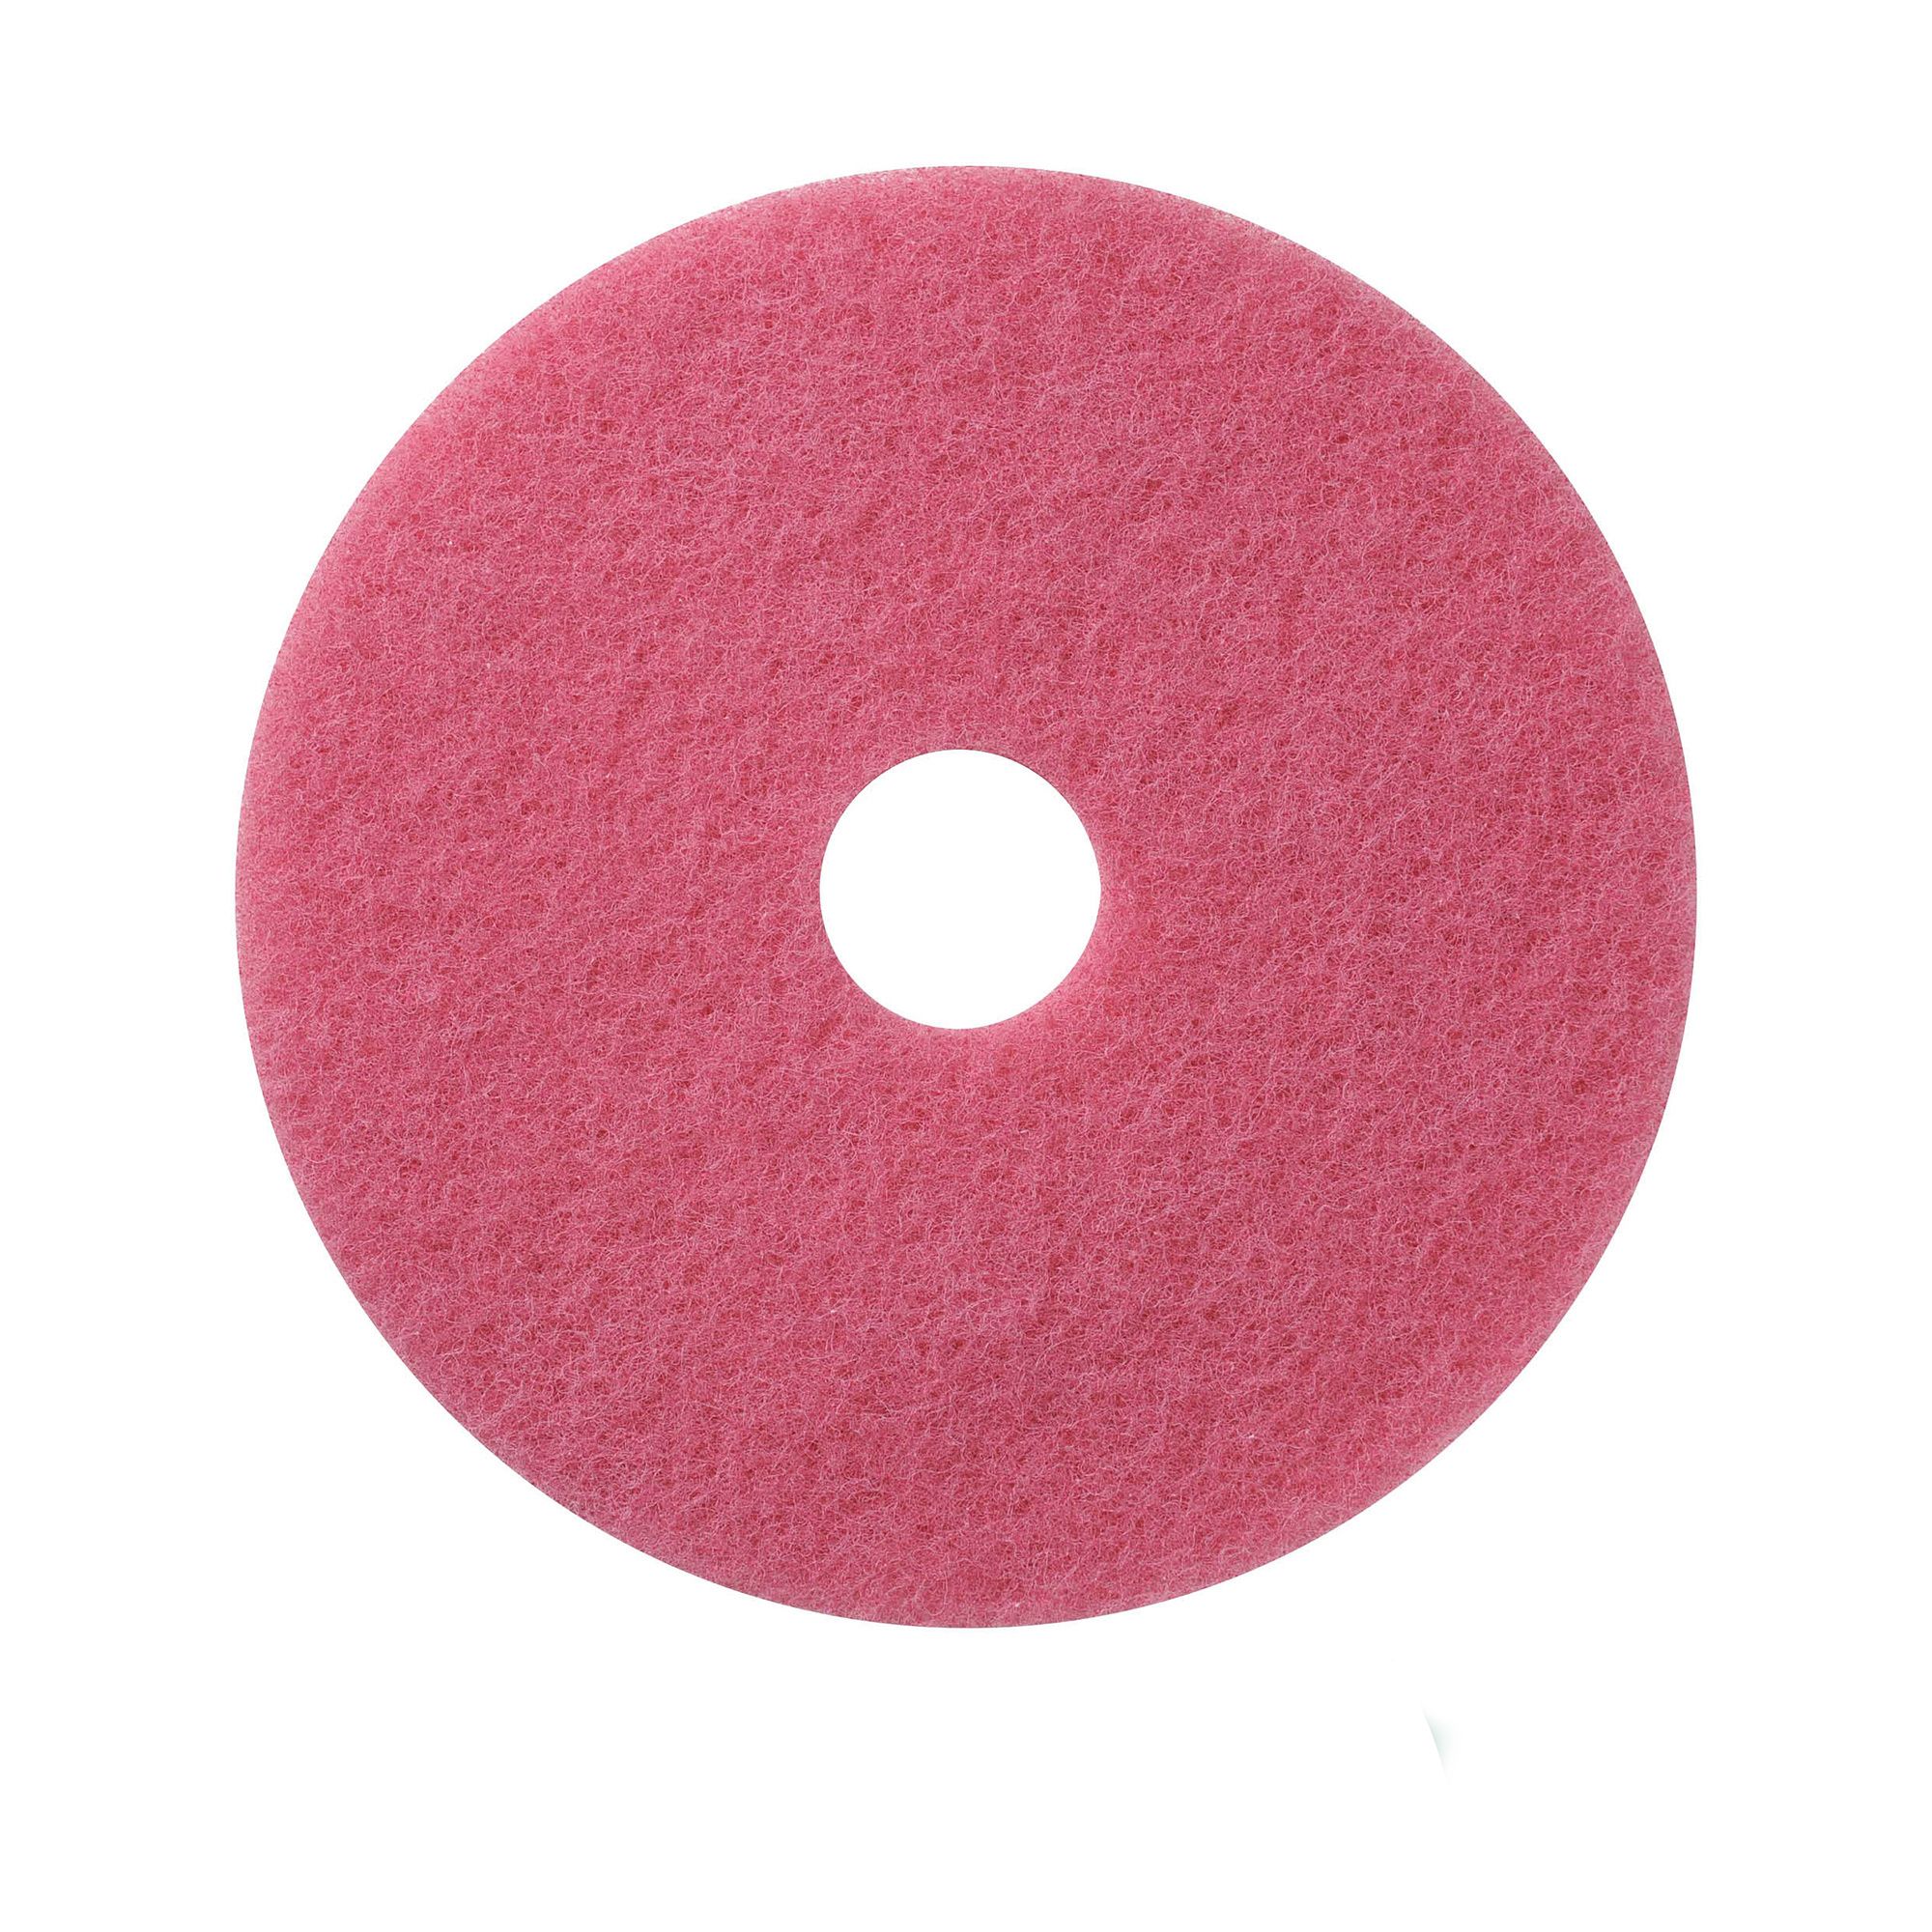 NuPad rose (gommage), par 5 pièces, 13 pouces / 330 mm